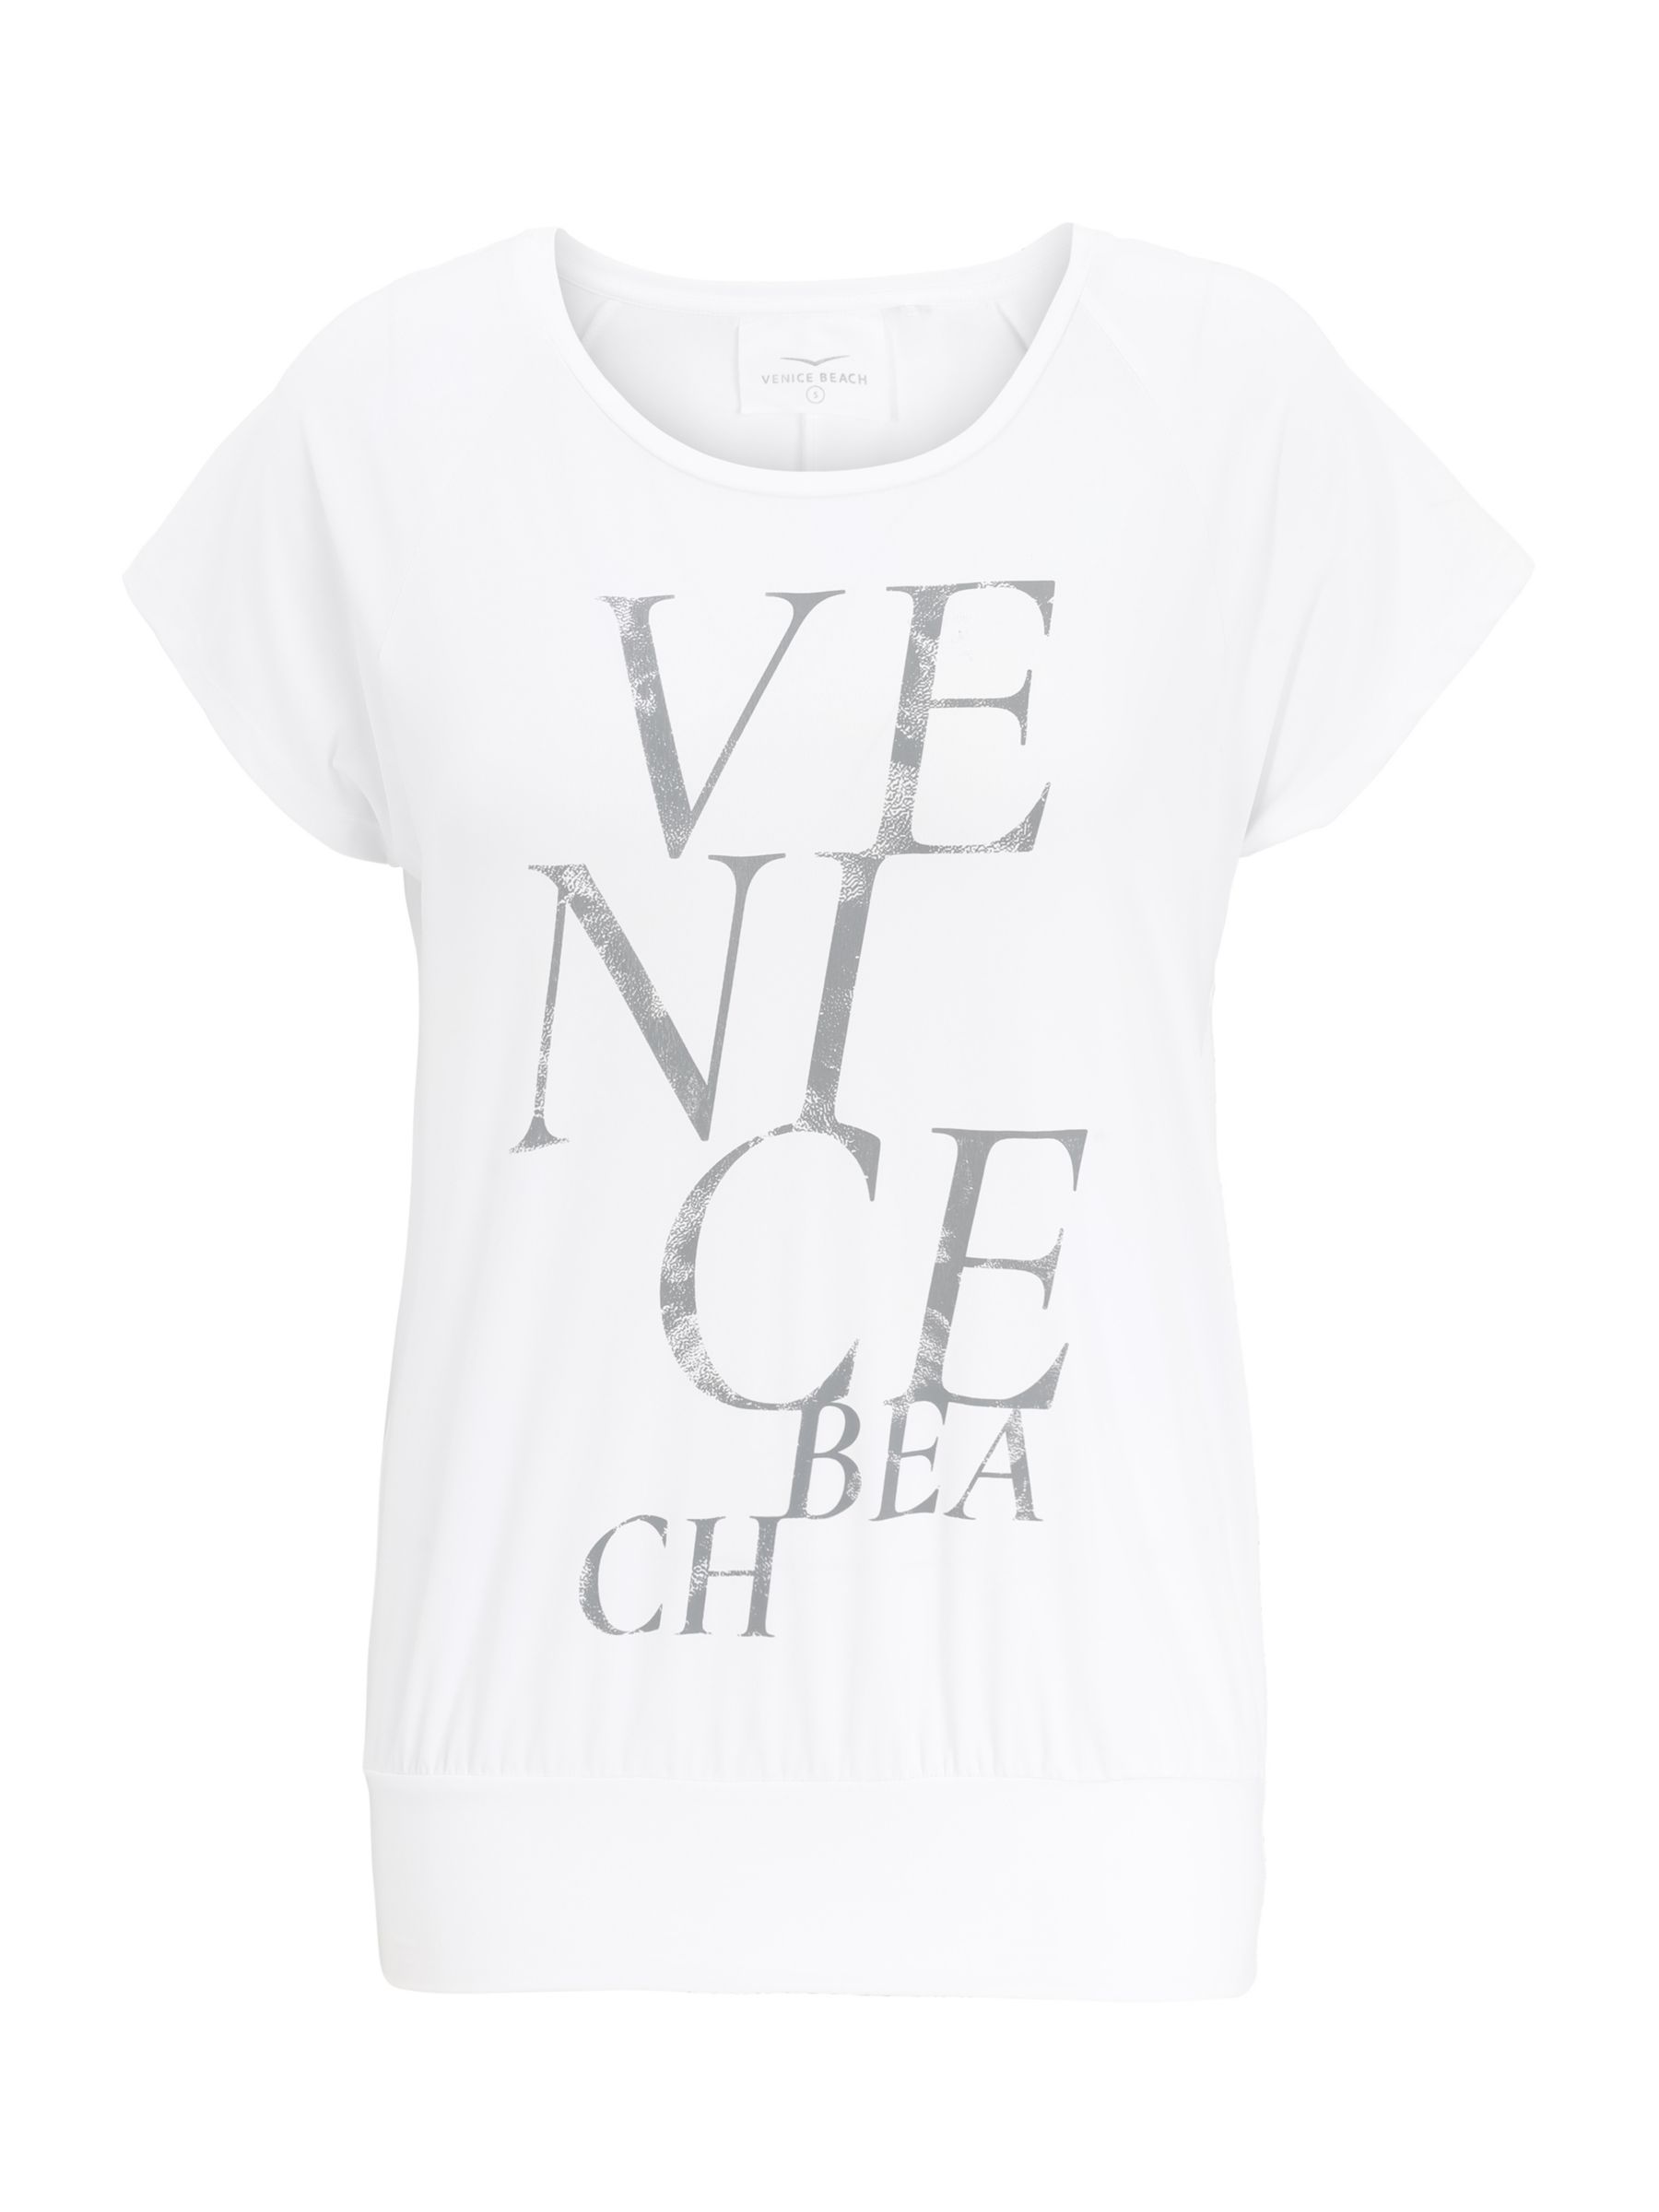 Venice Beach Nobel T-Shirt, White, XS